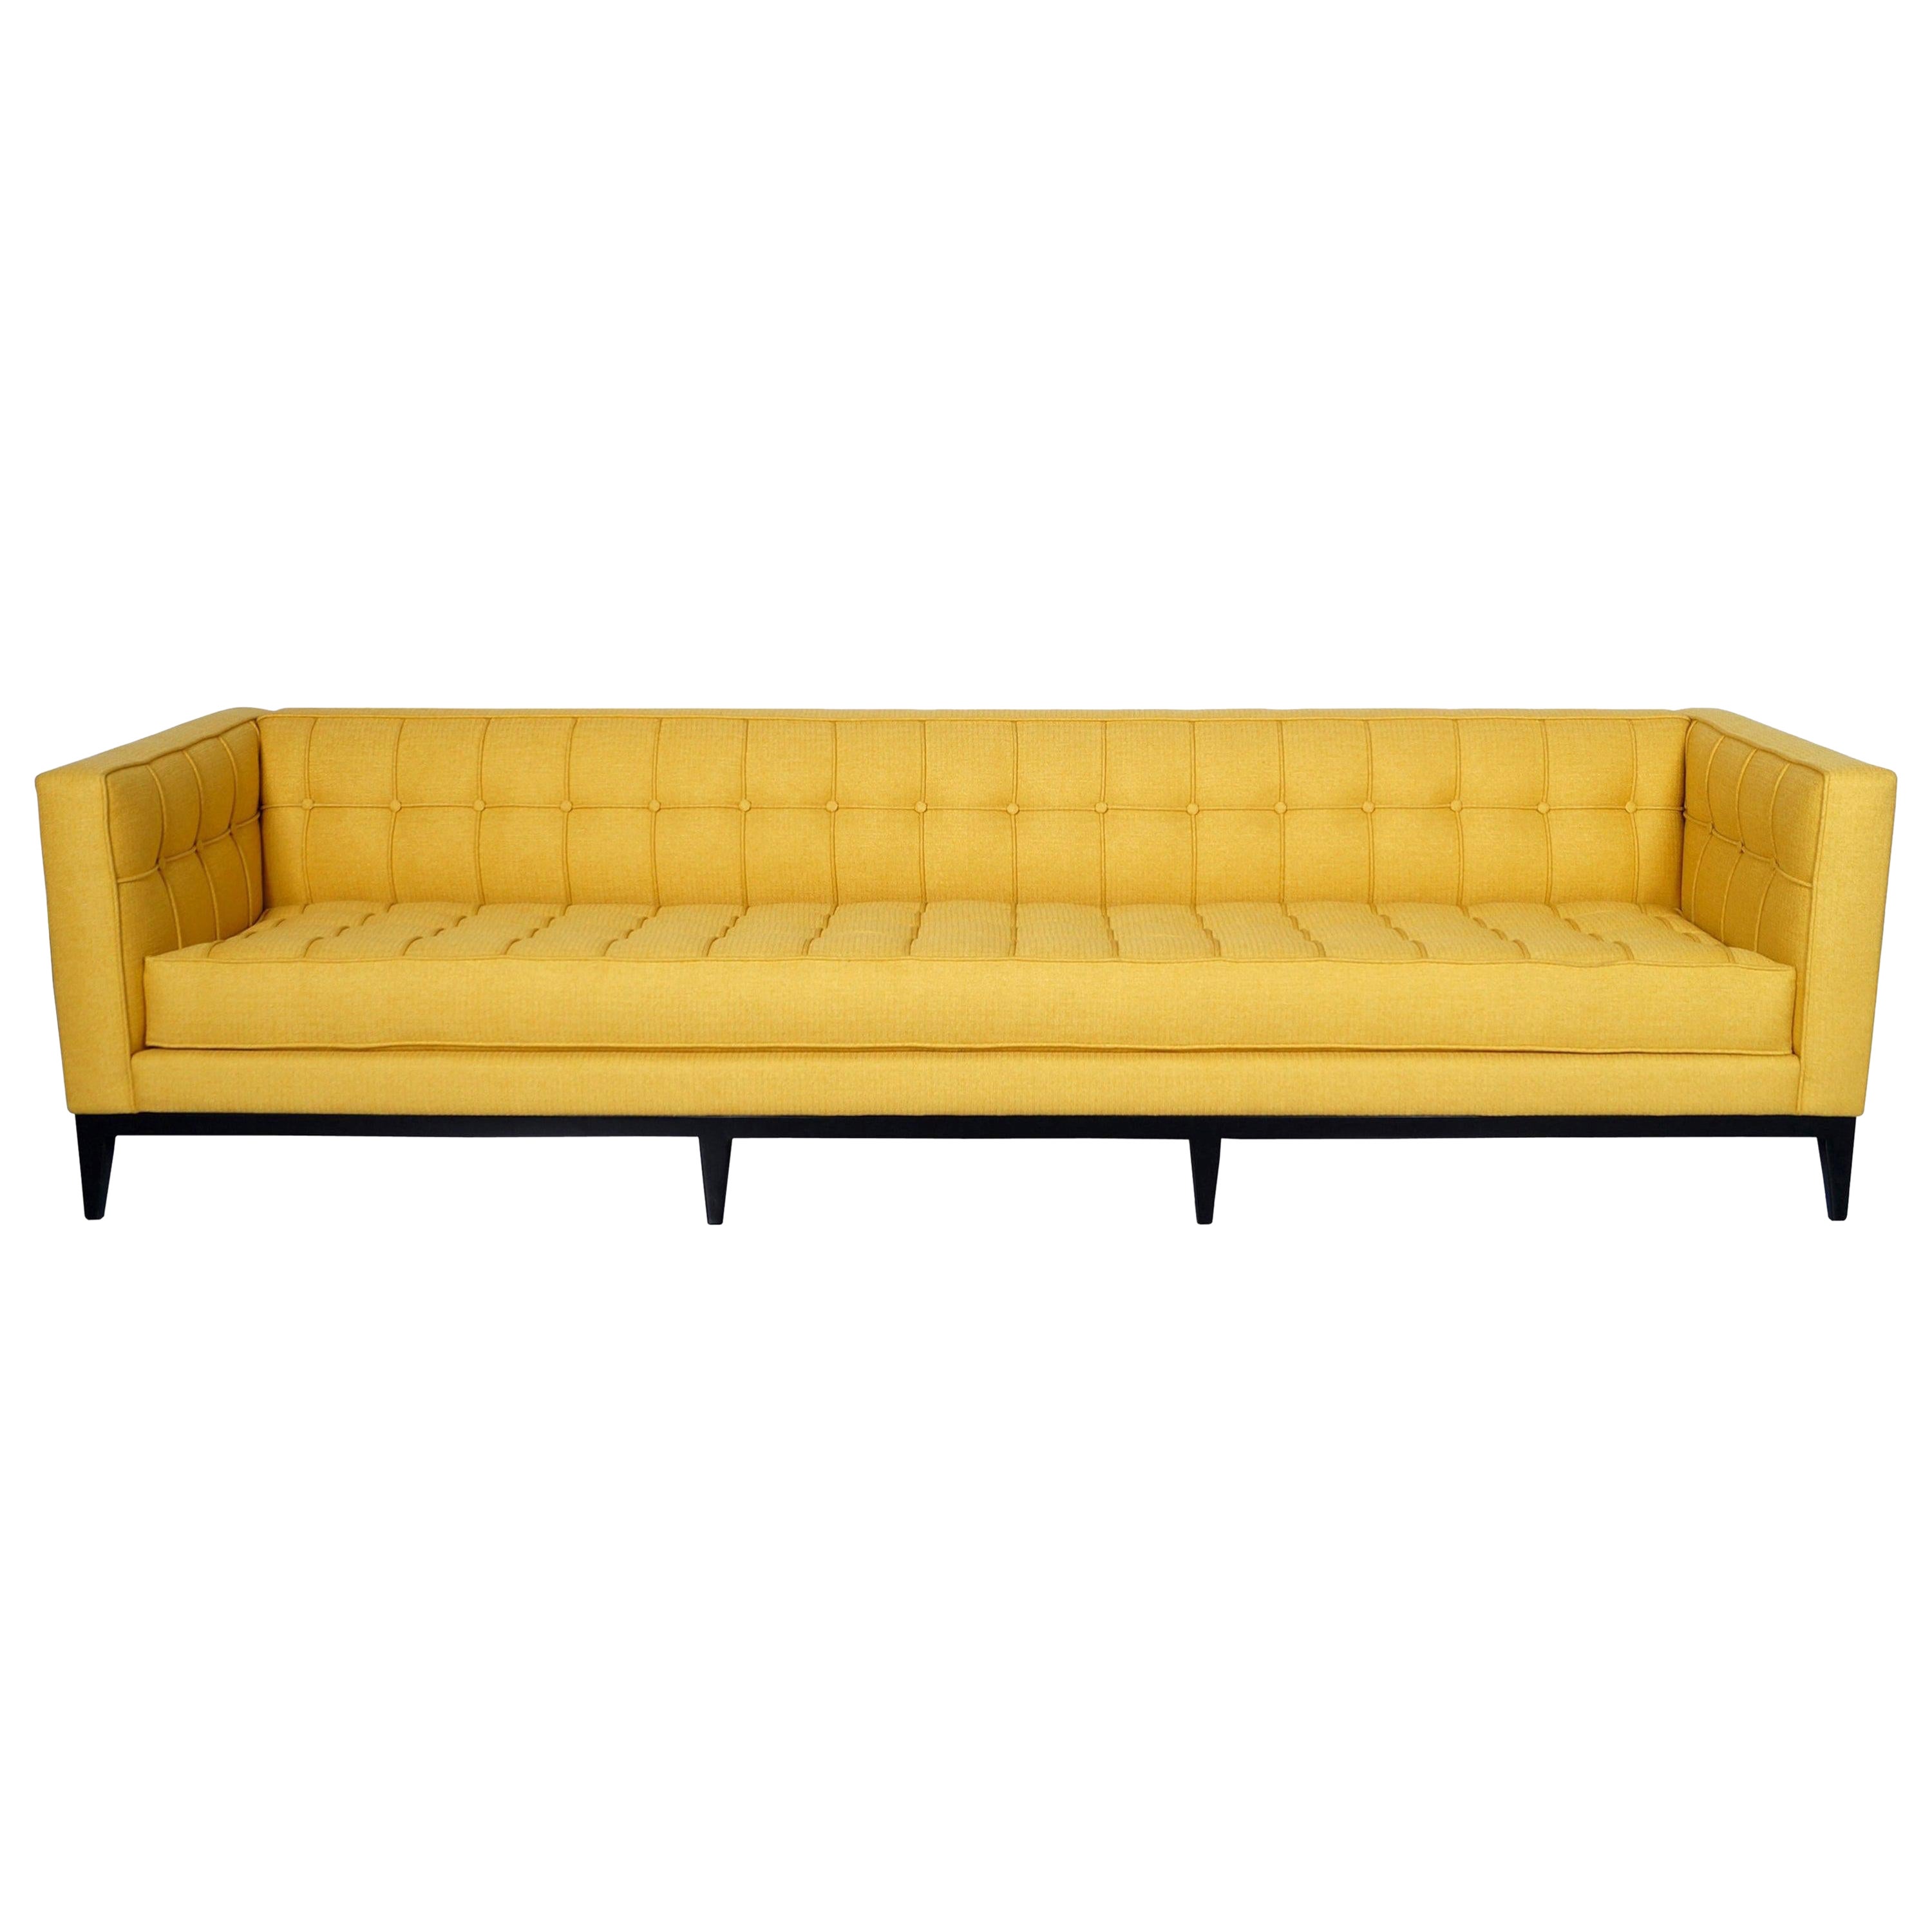 Elegant Tufted "Vista" Sofa by Cruz Design Studio